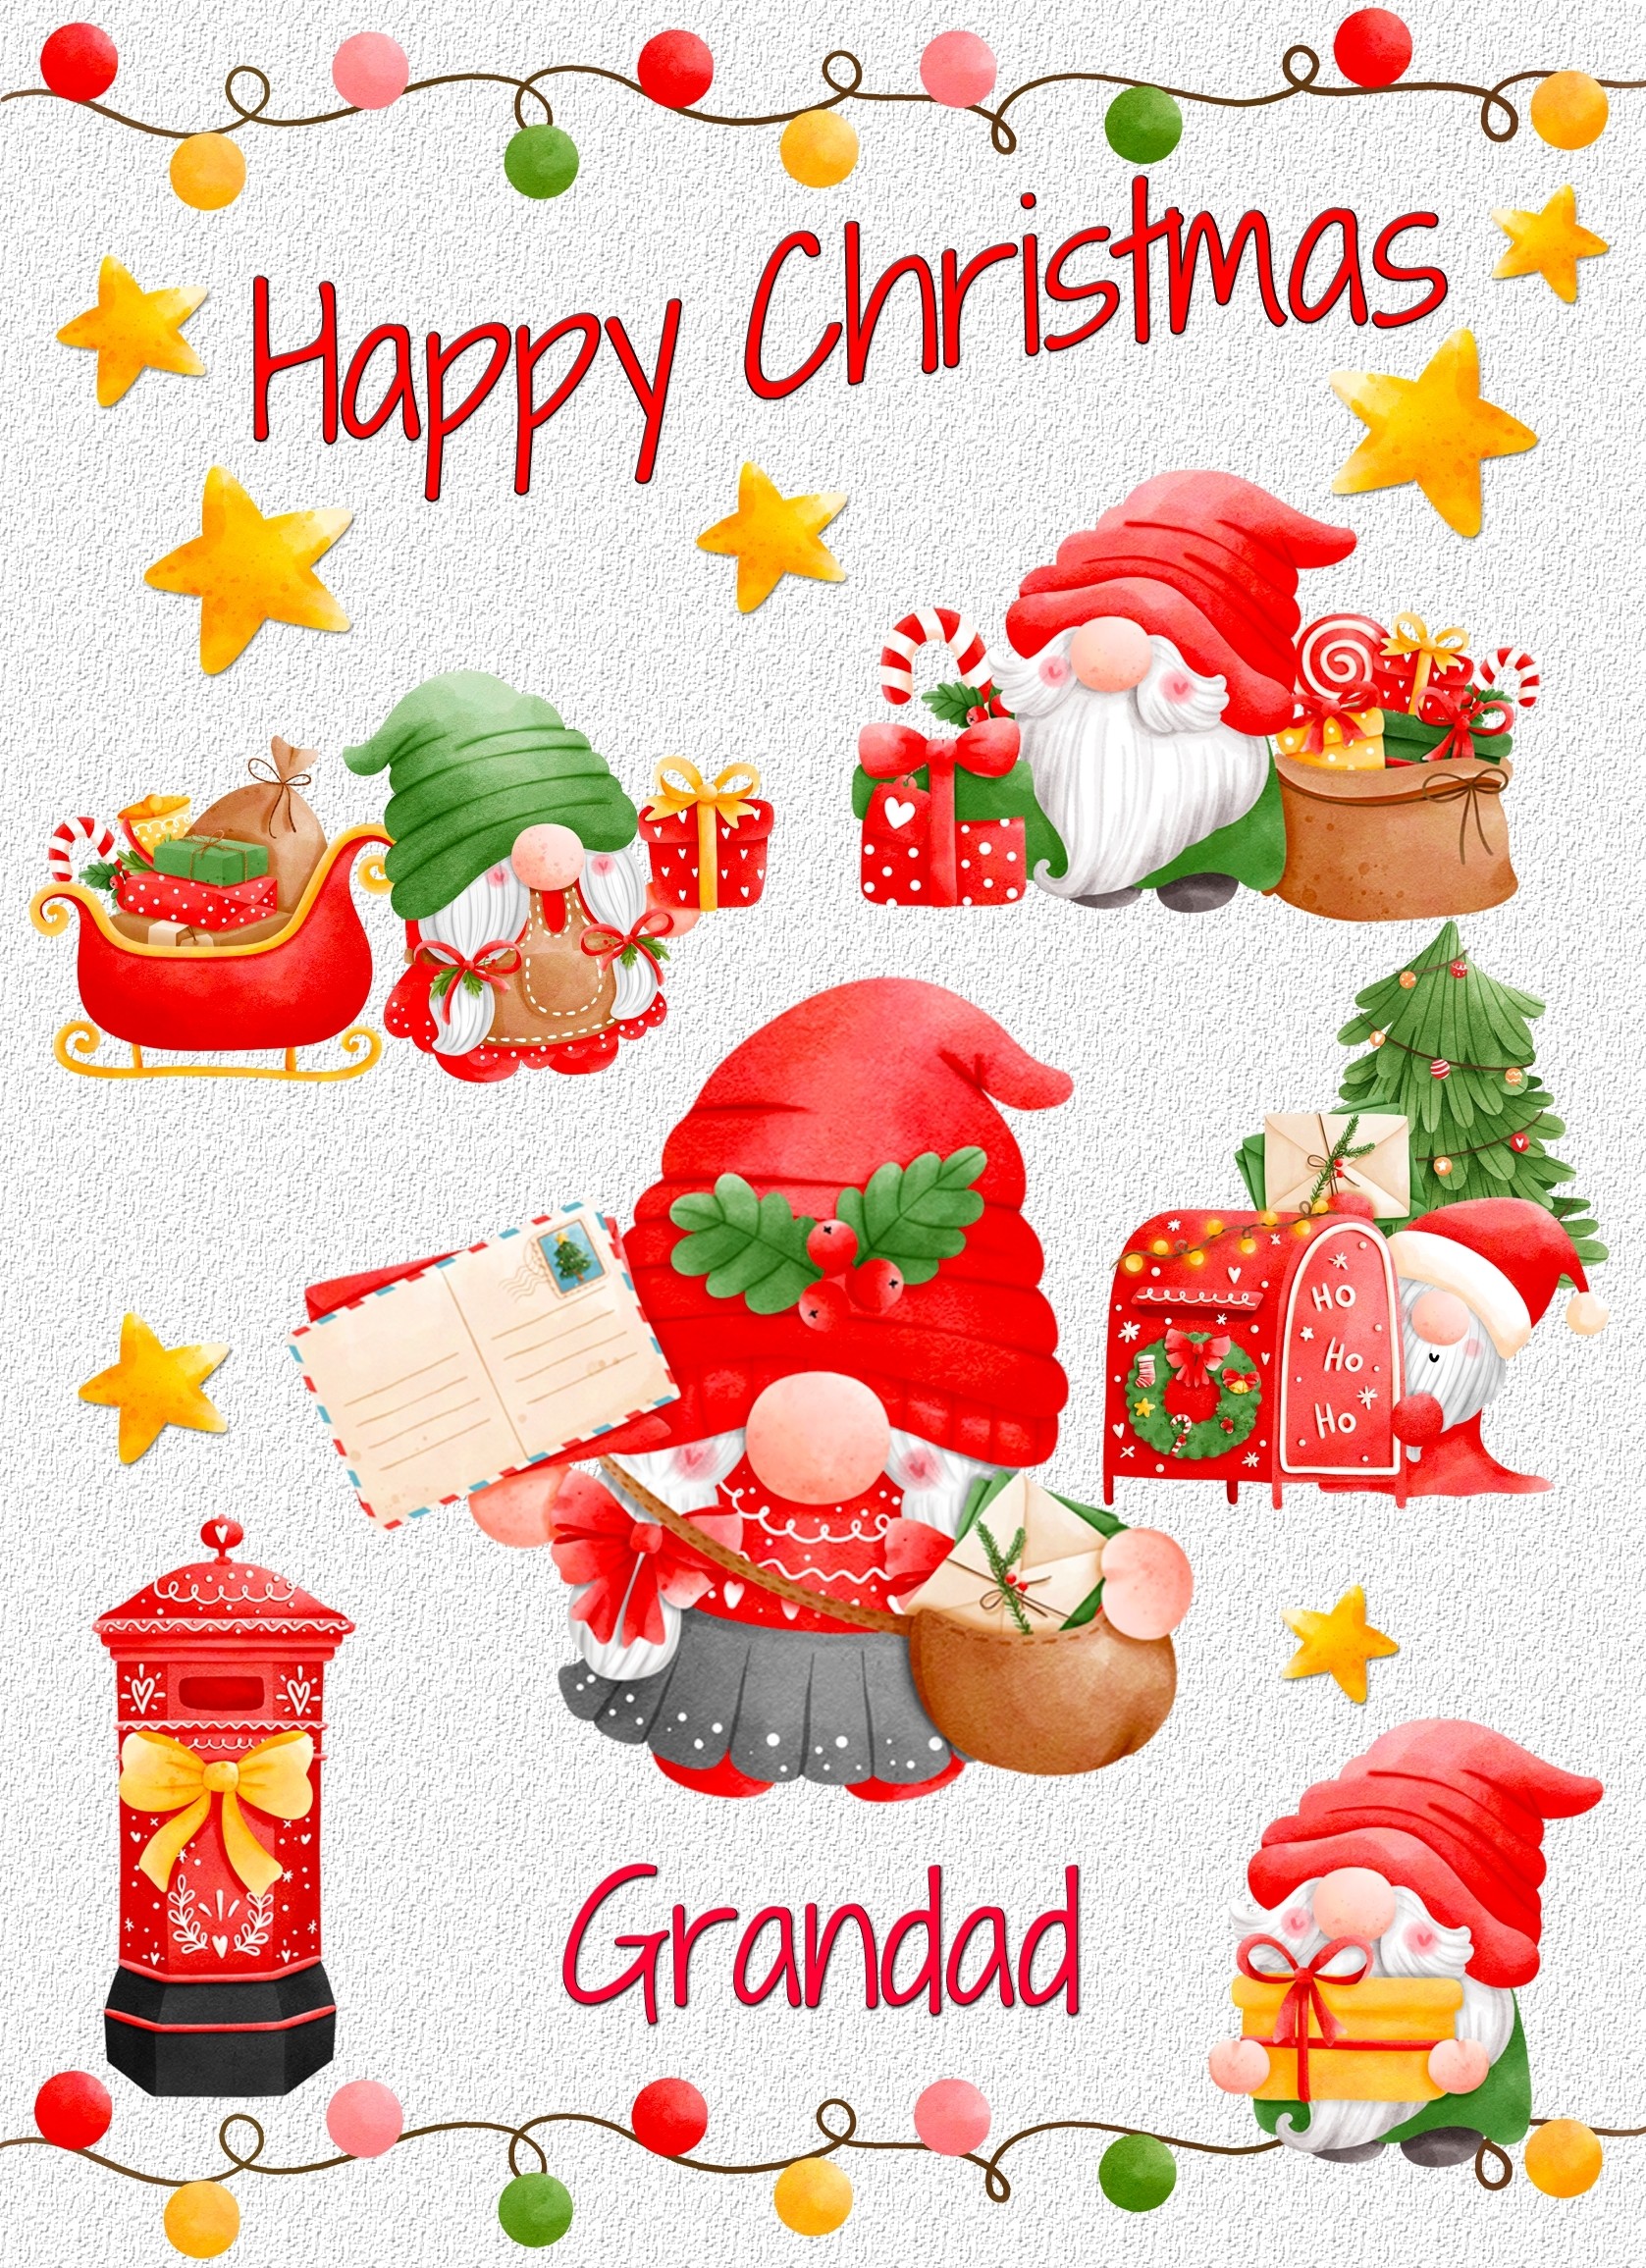 Christmas Card For Grandad (Gnome, White)